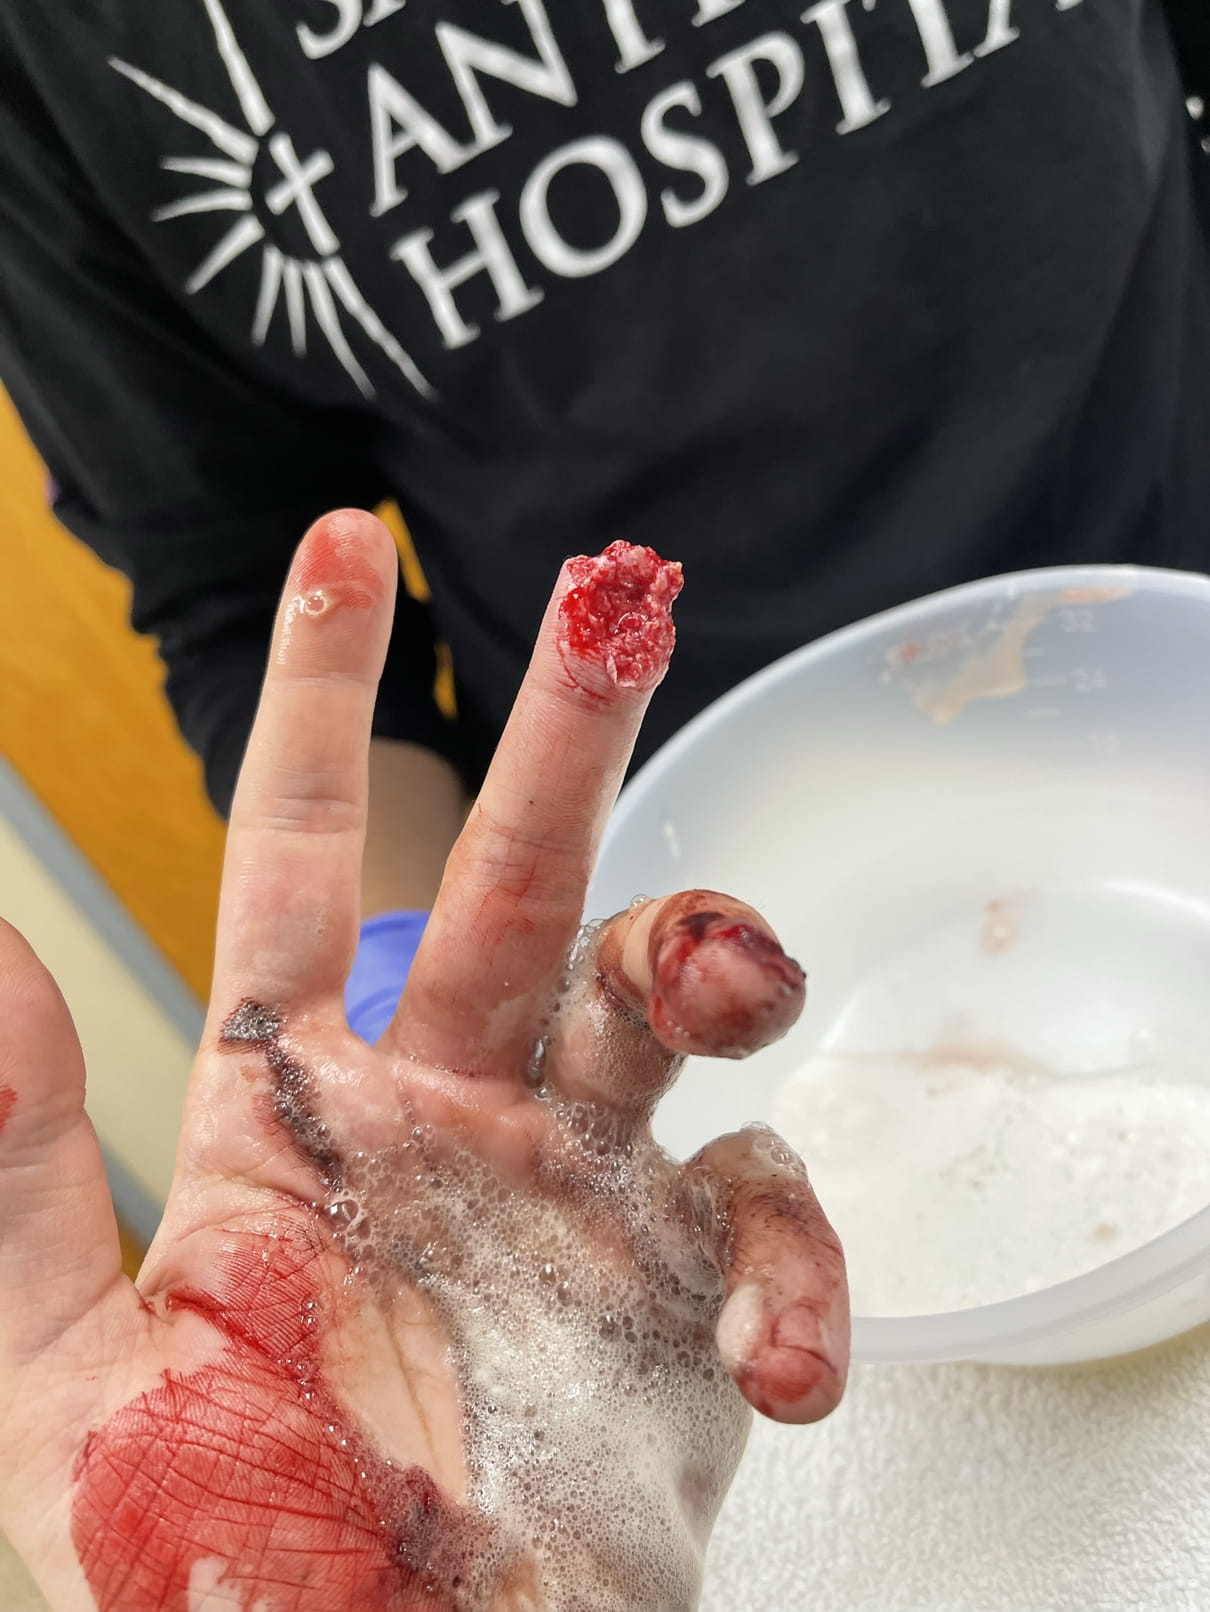 Finger got cut off whoooosss